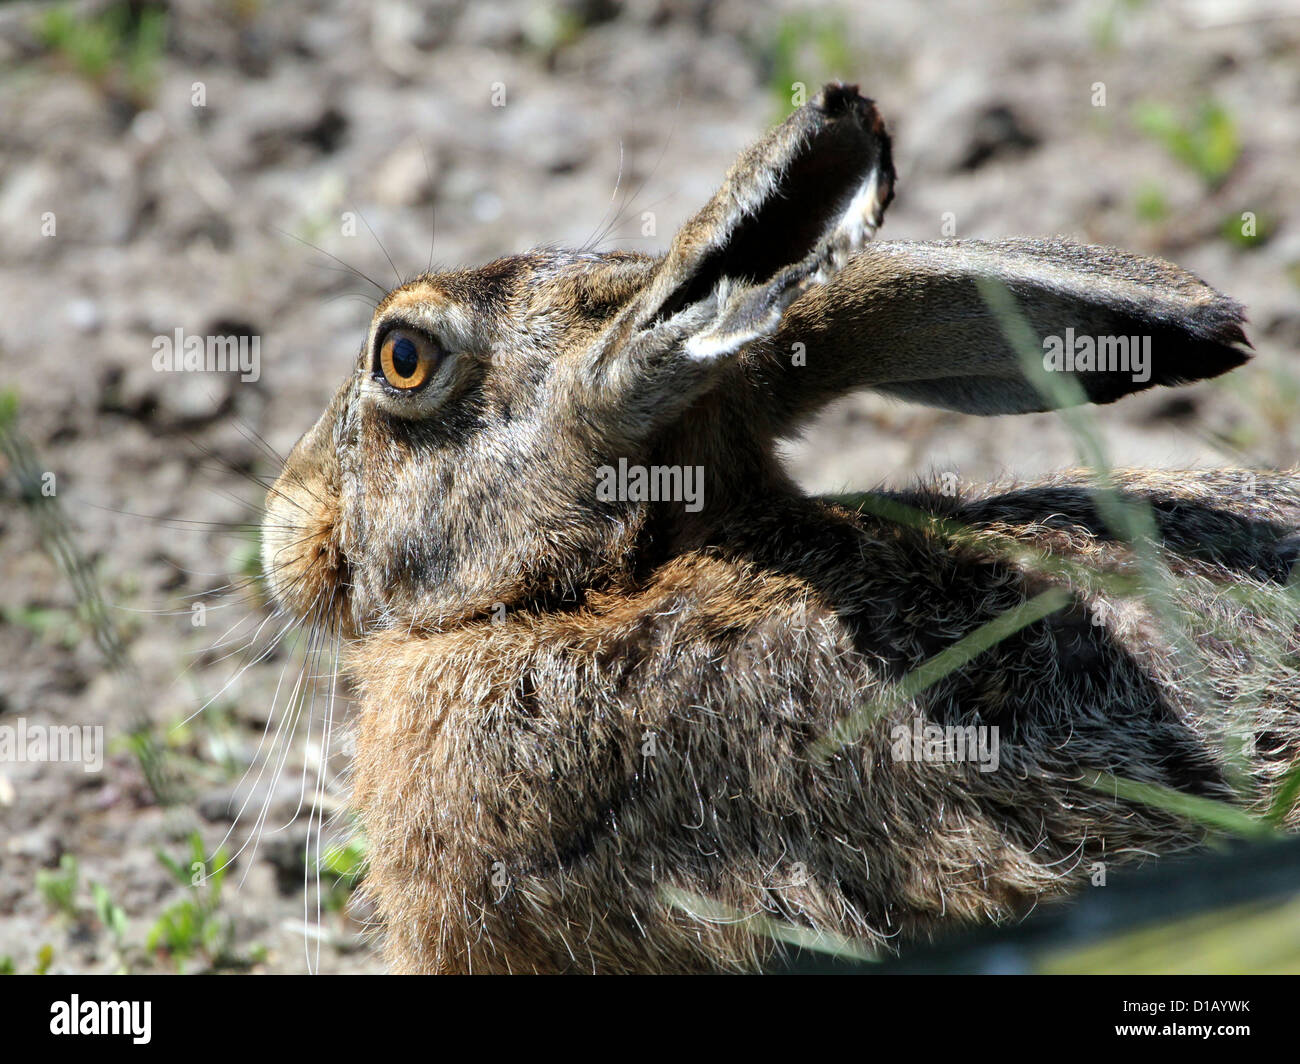 Retrato de una Unión Brown (Lepus europaeus) en extremo detalle Foto de stock